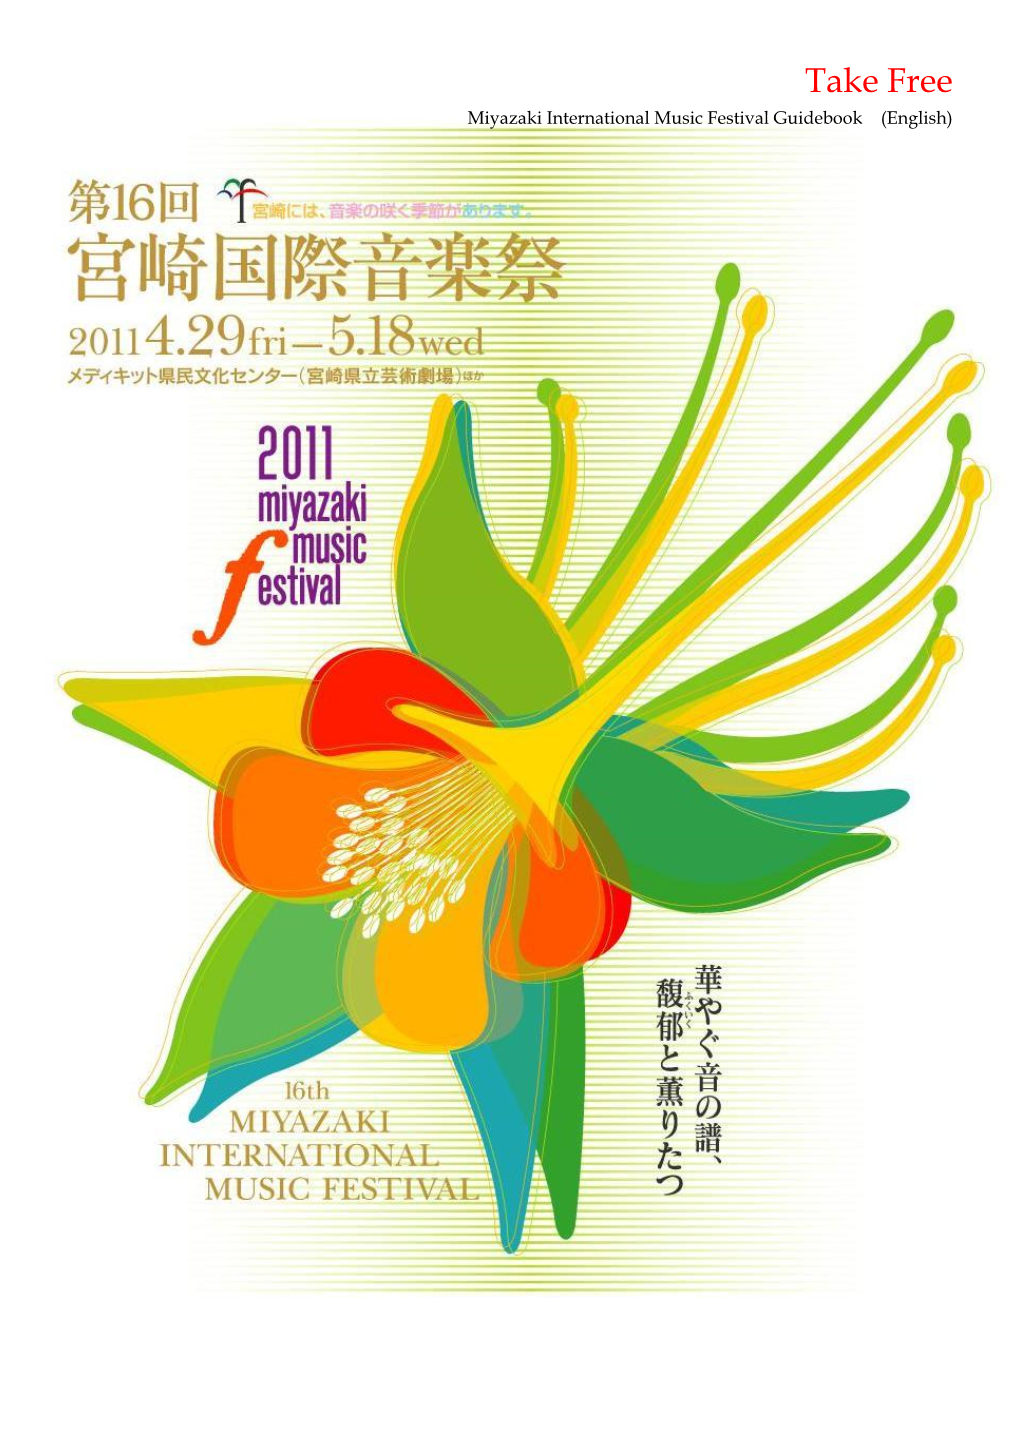 Take Free Miyazaki International Music Festival Guidebook (English)